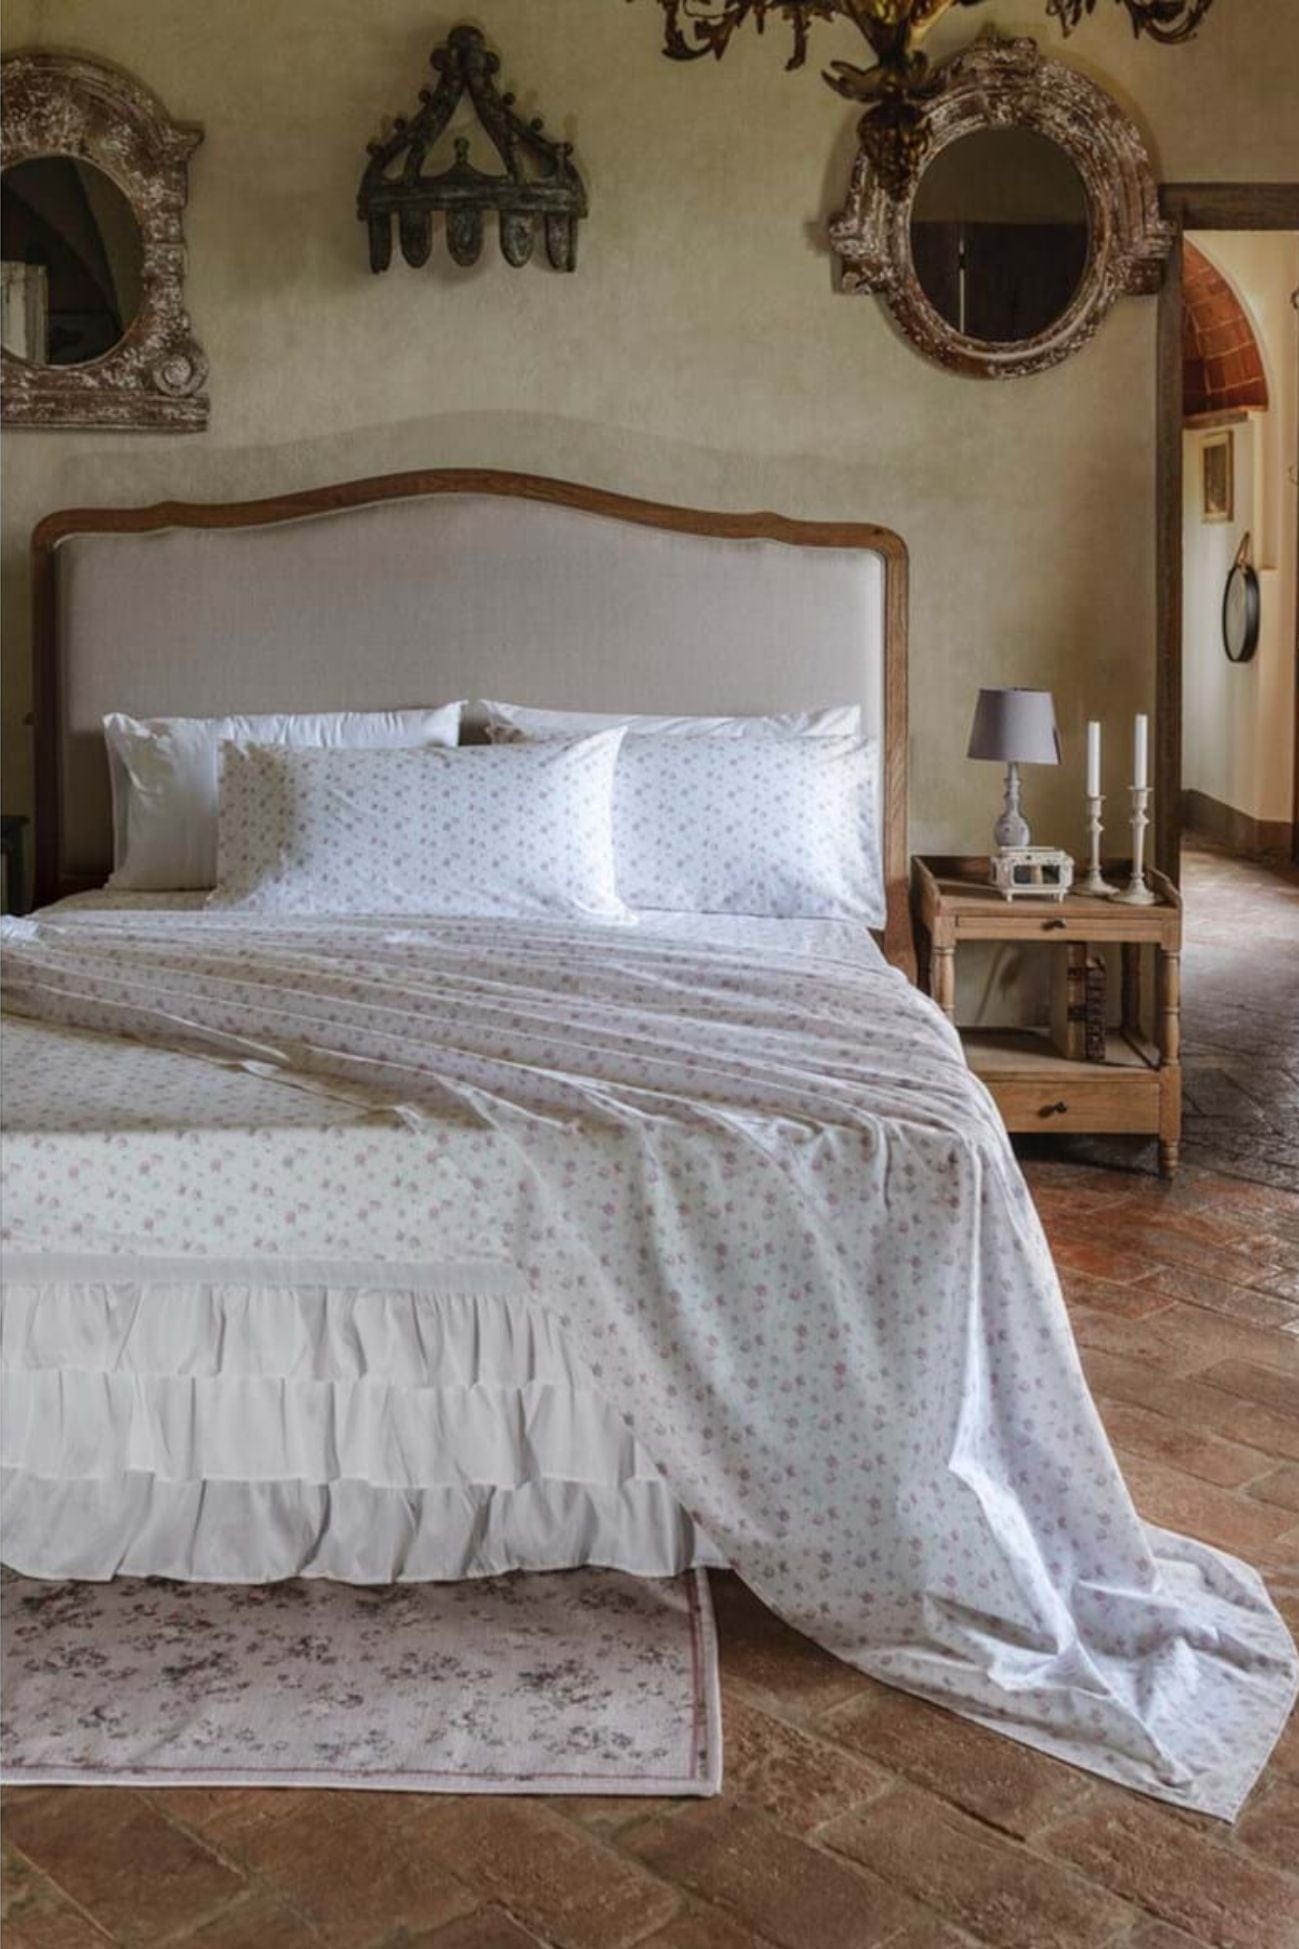 Blanc MariClo' Primerose Infinity Tuscany - Completo letto matrimoniale beige in puro cotone con 2 federe 300x245 | Blanc MariClo'